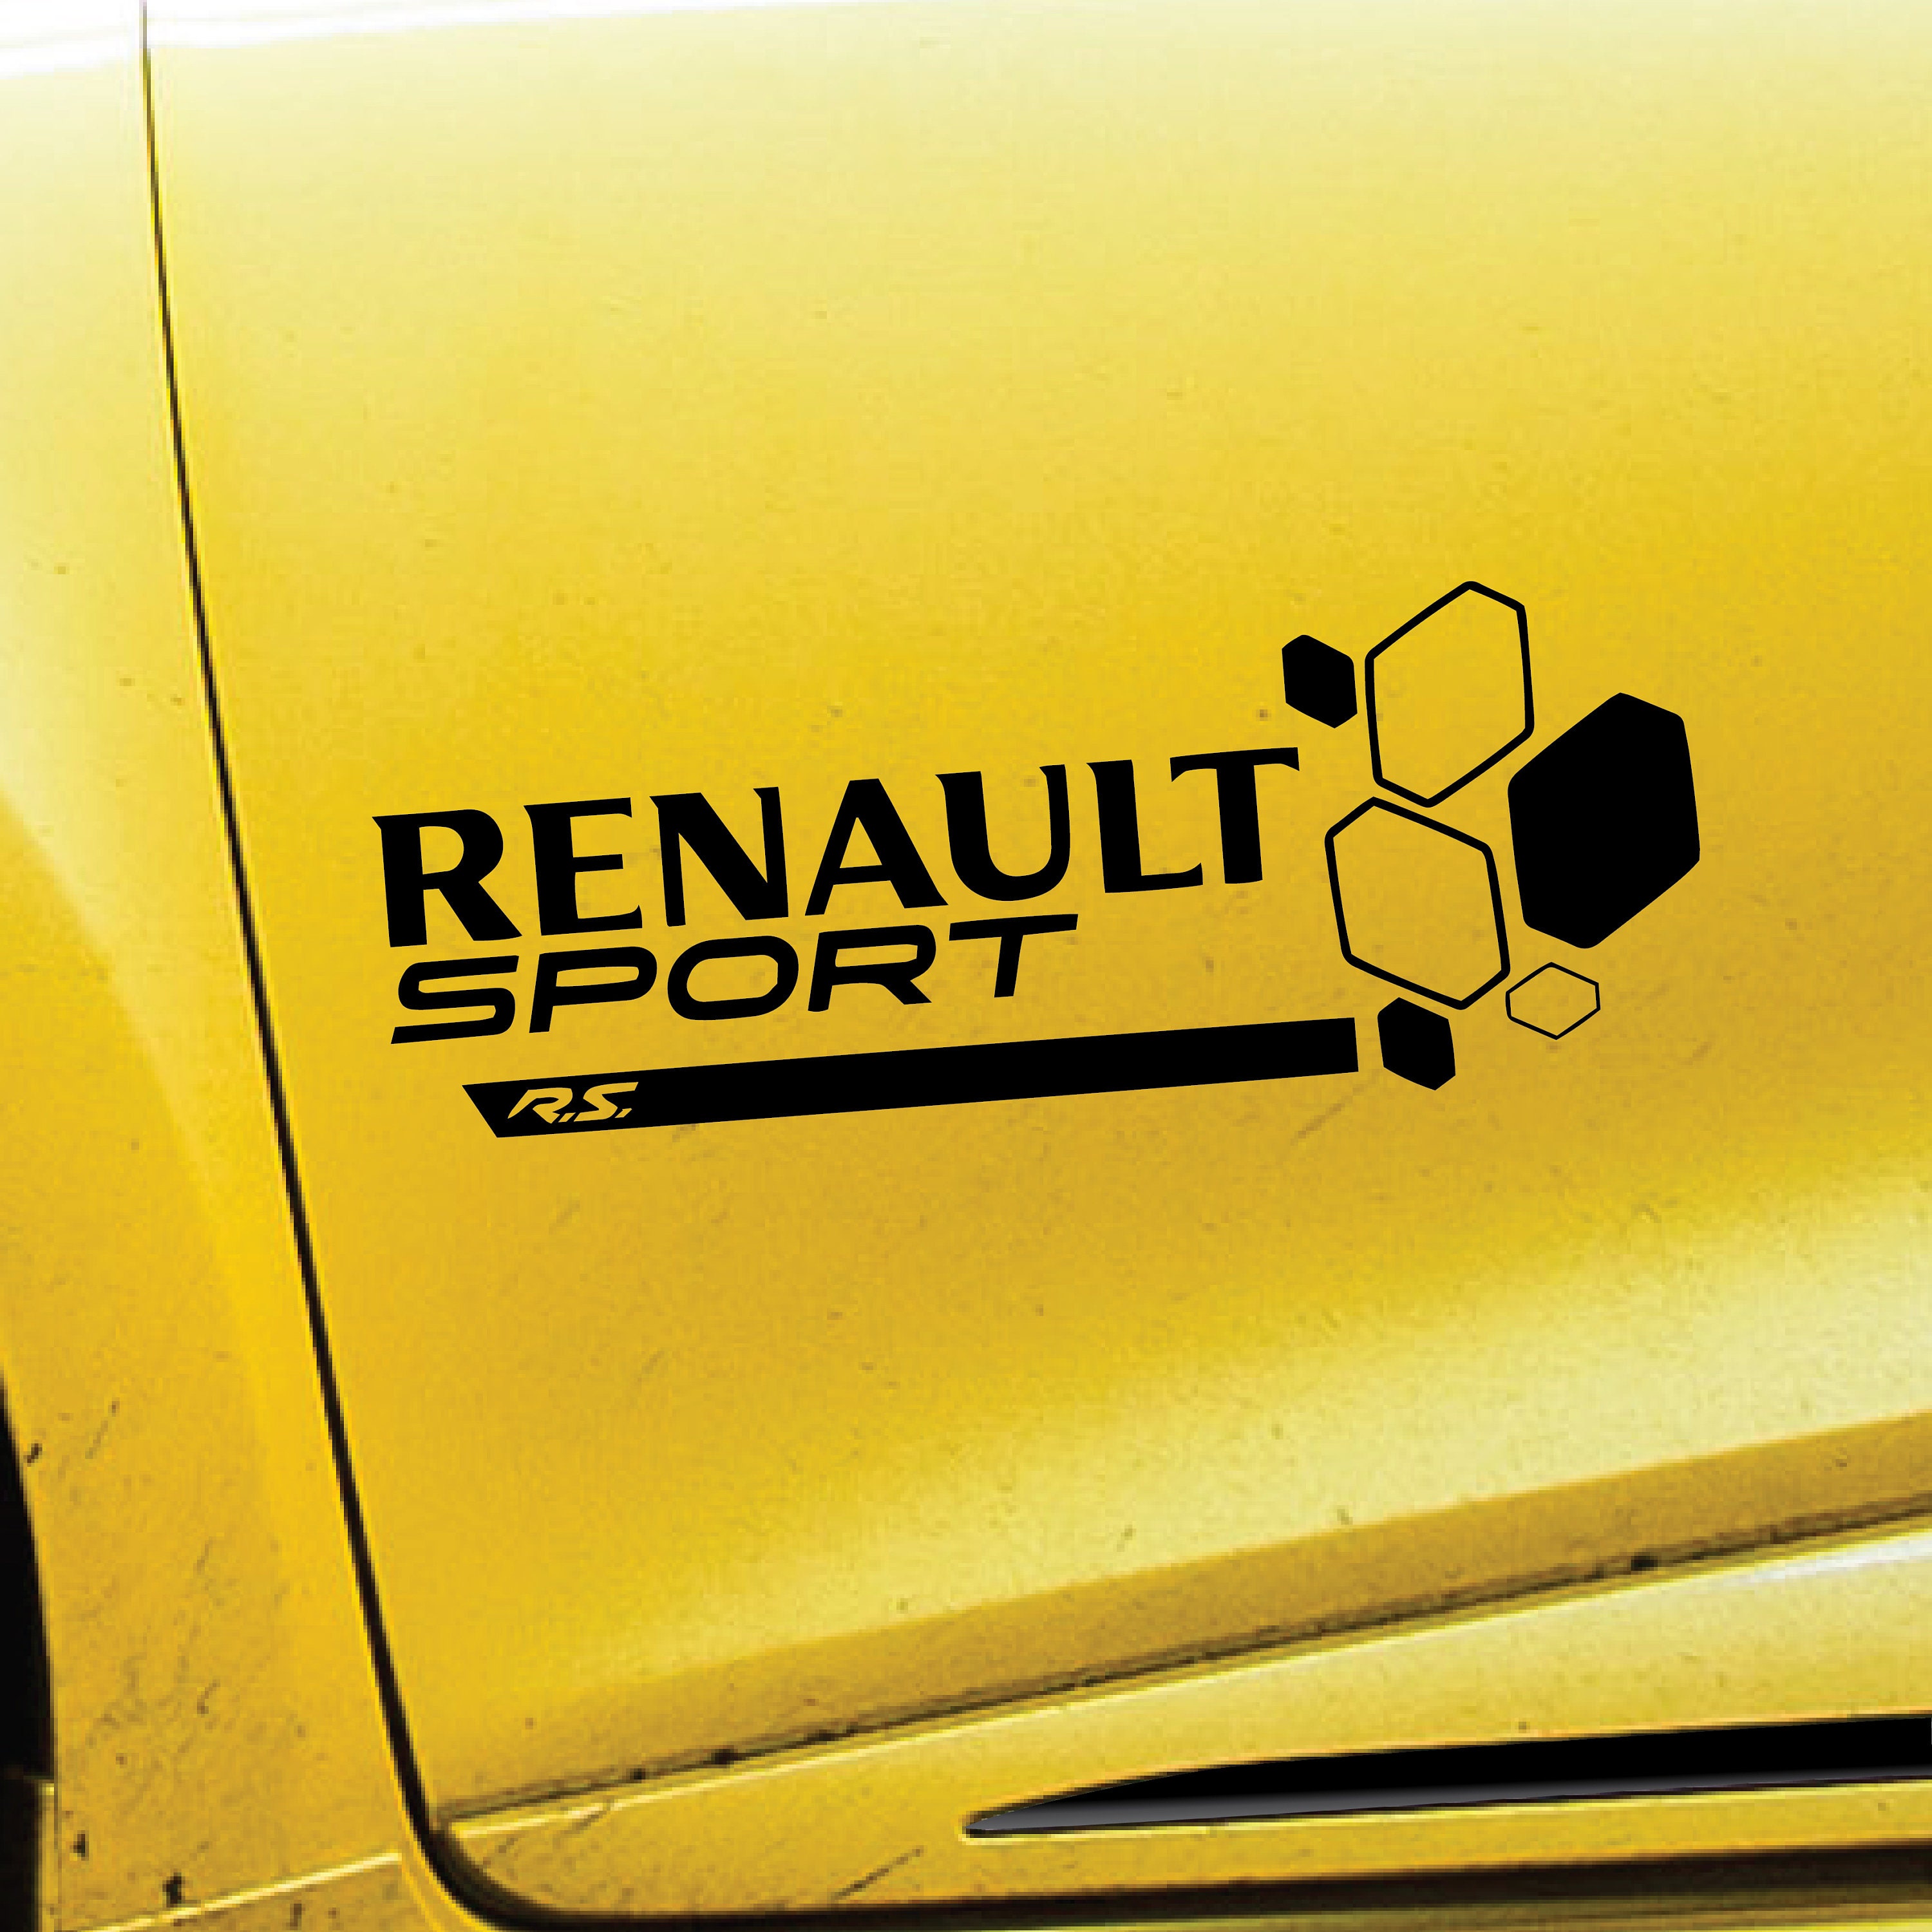 Stickers RENAULT sport ref 71